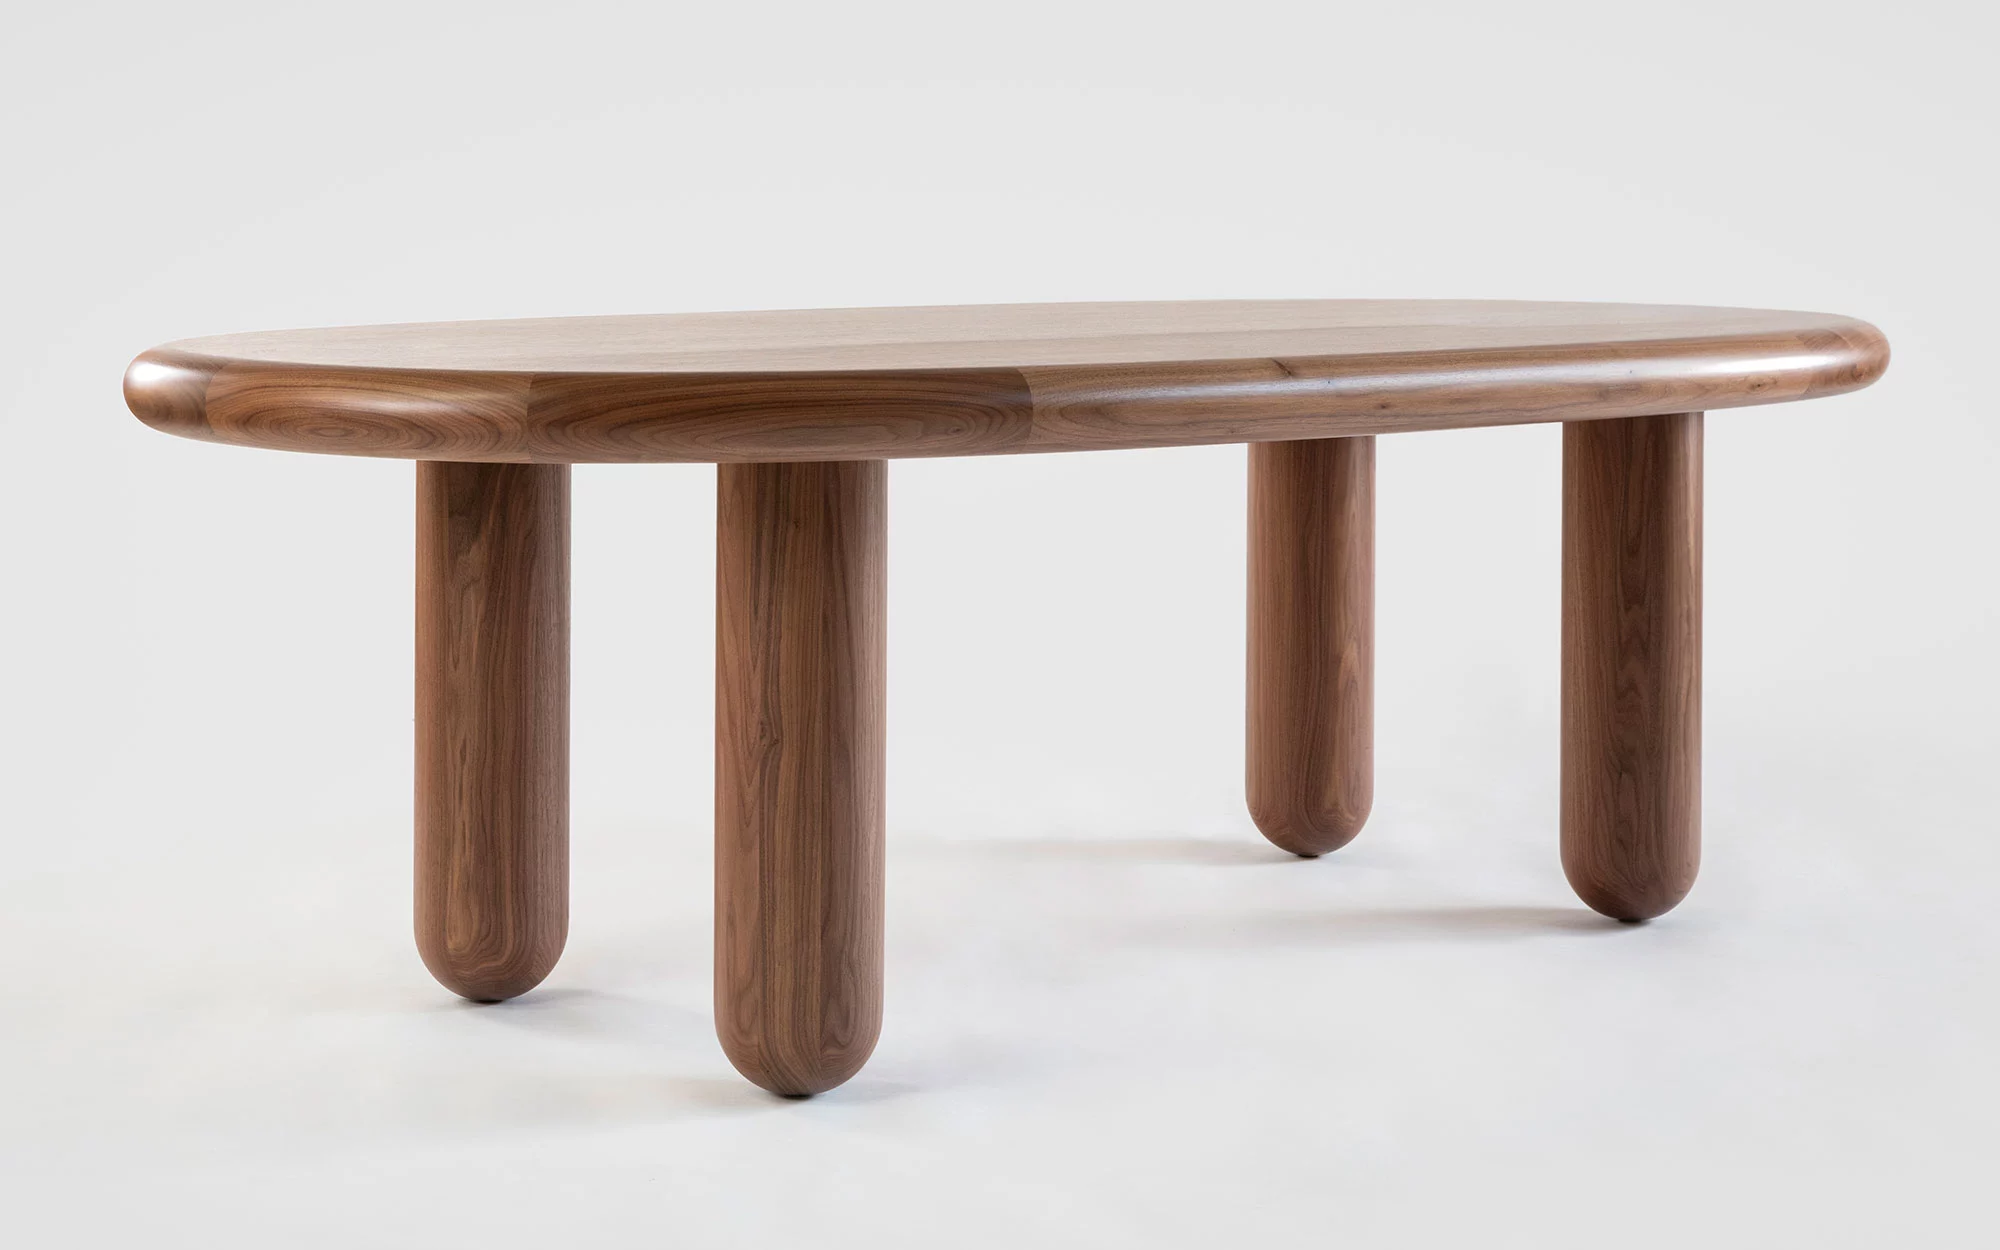 Organism oval table - Jaime Hayon - Pendant light - Galerie kreo